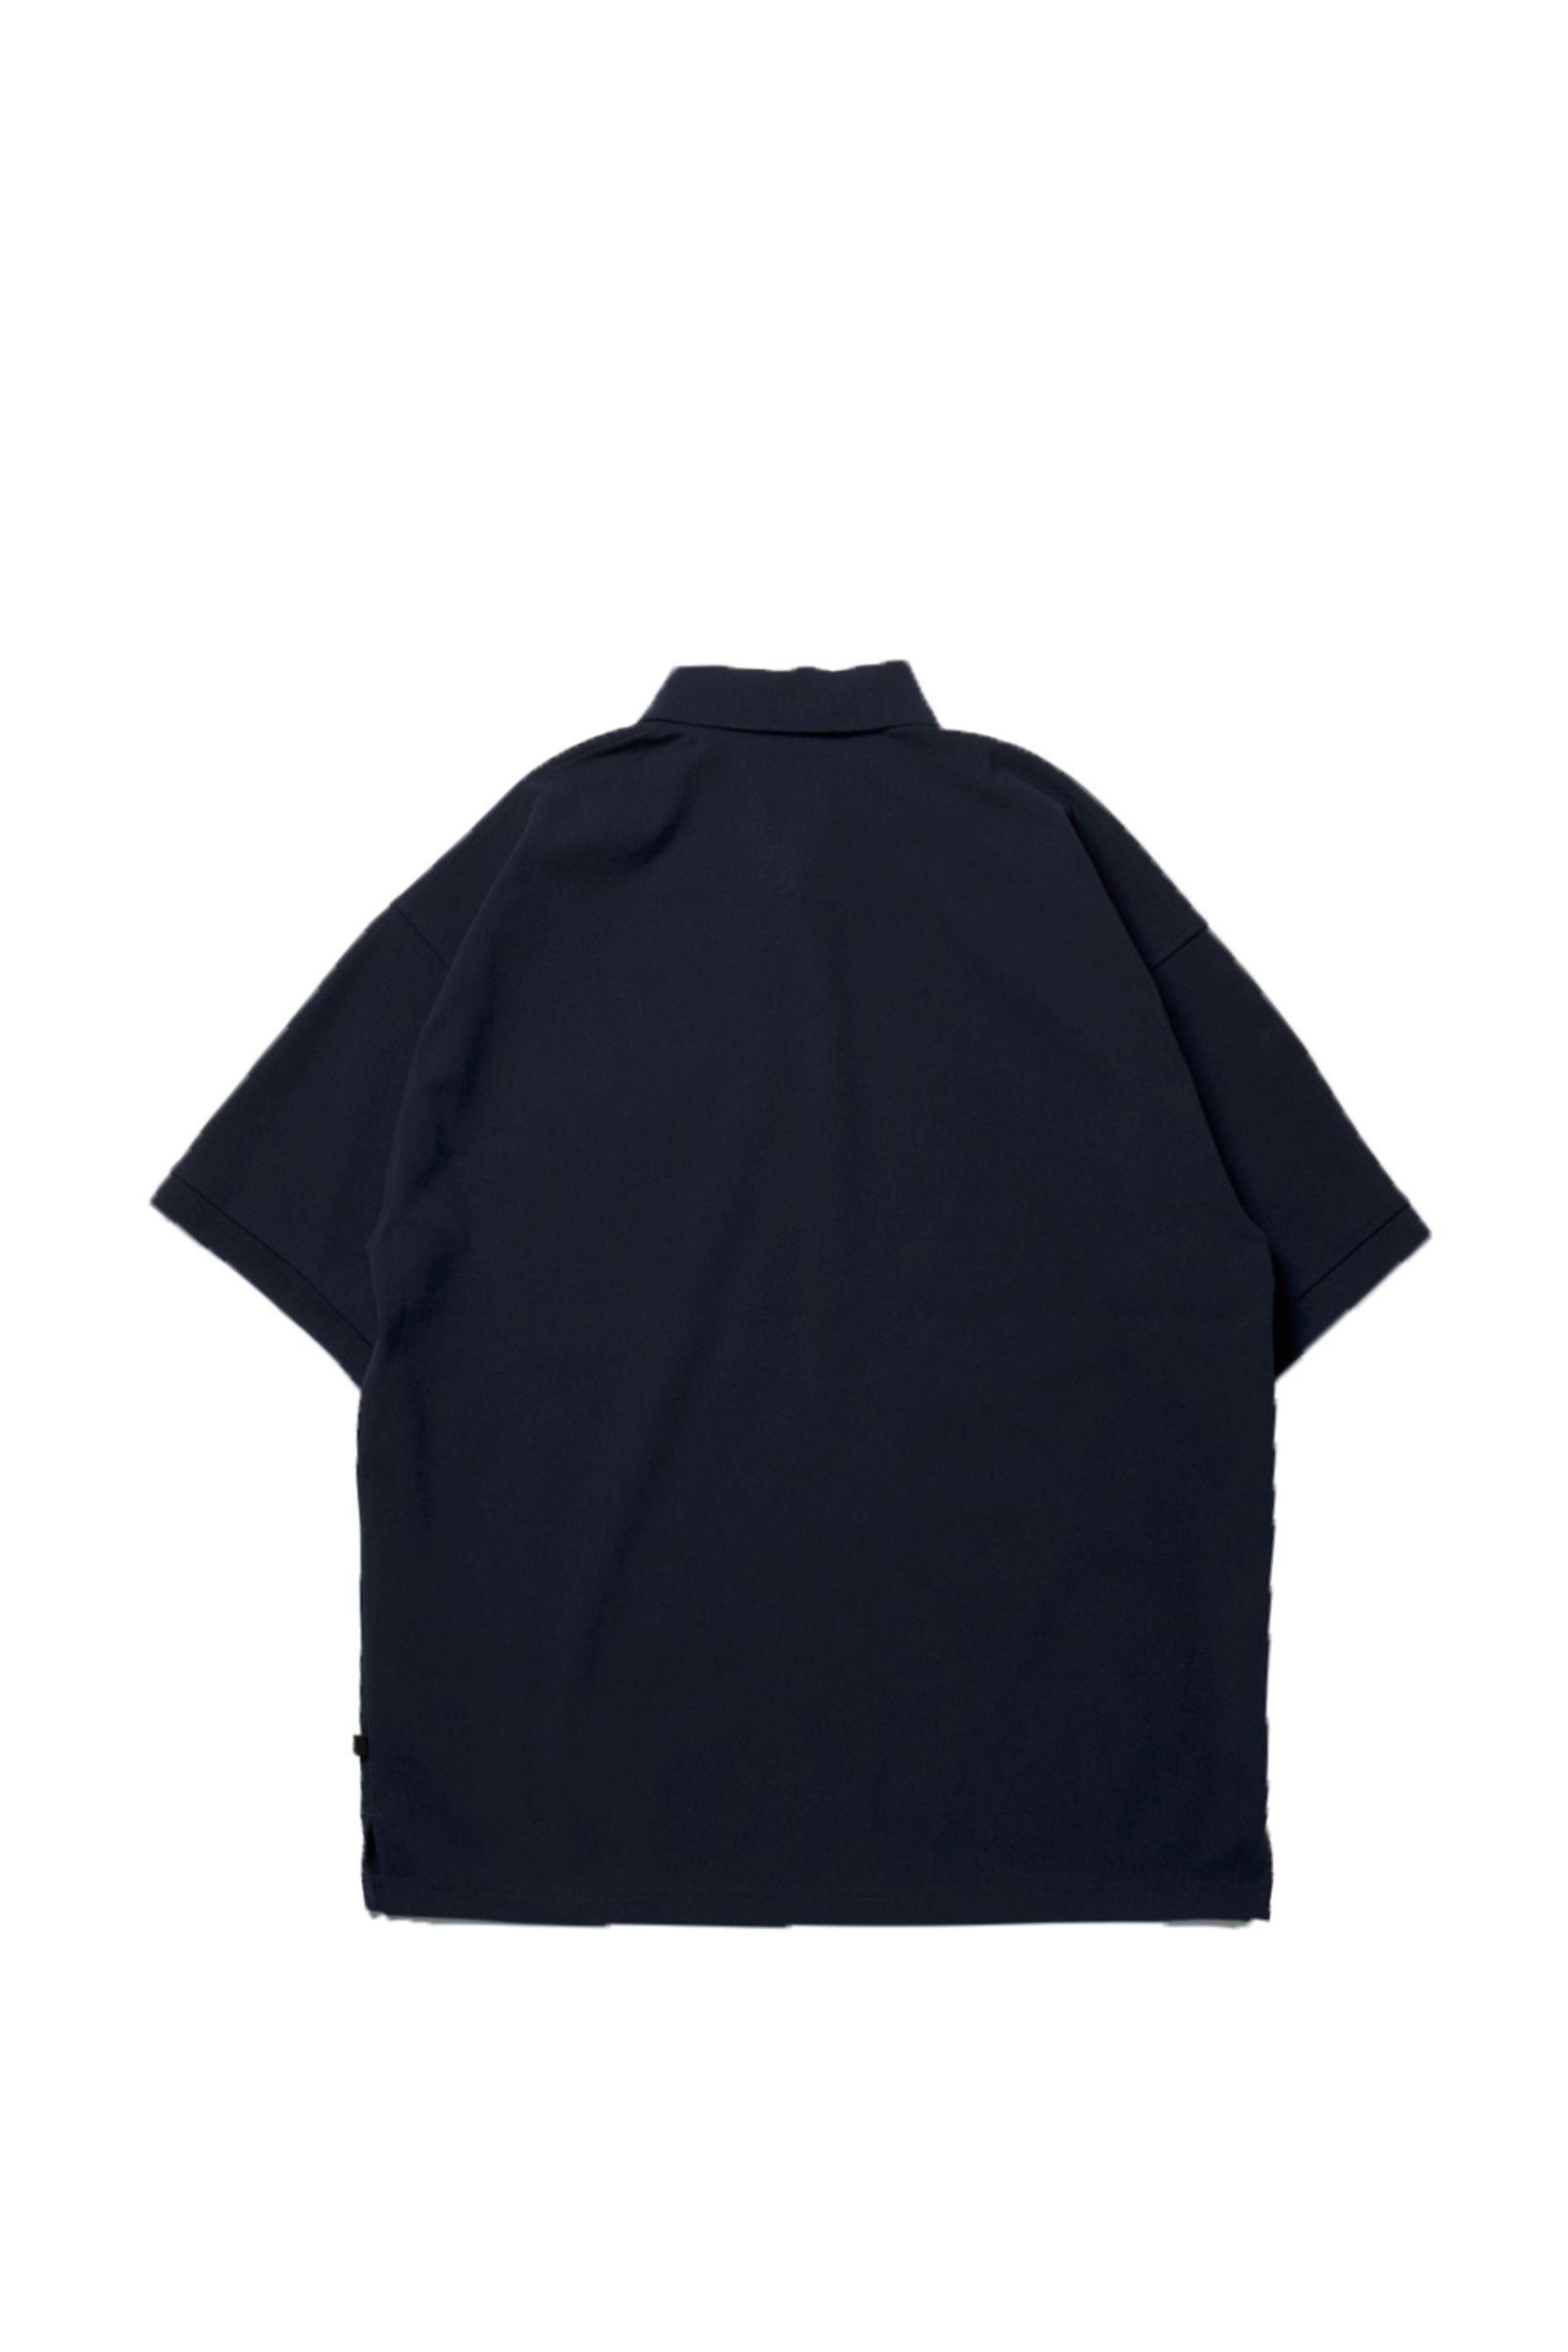 DAIWA PIER39 - tech polo shirts s/s-black-23ss men | asterisk